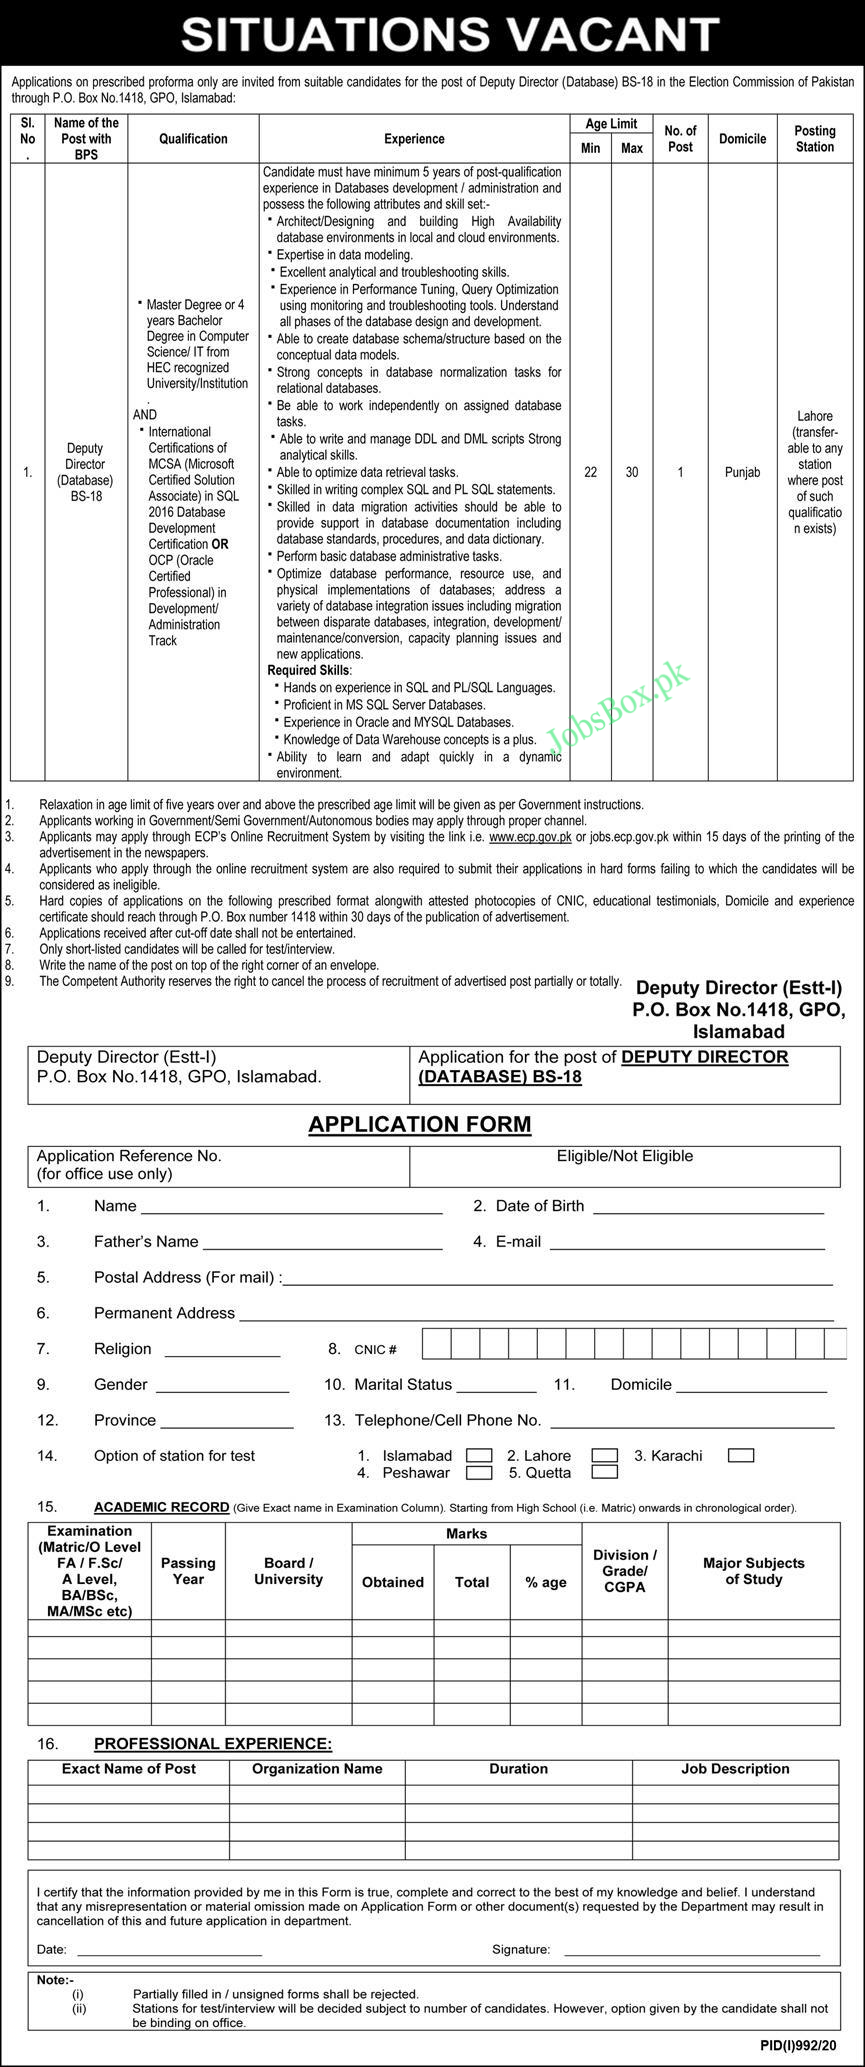 P.O Box 1418 GPO Islamabad Jobs 2020